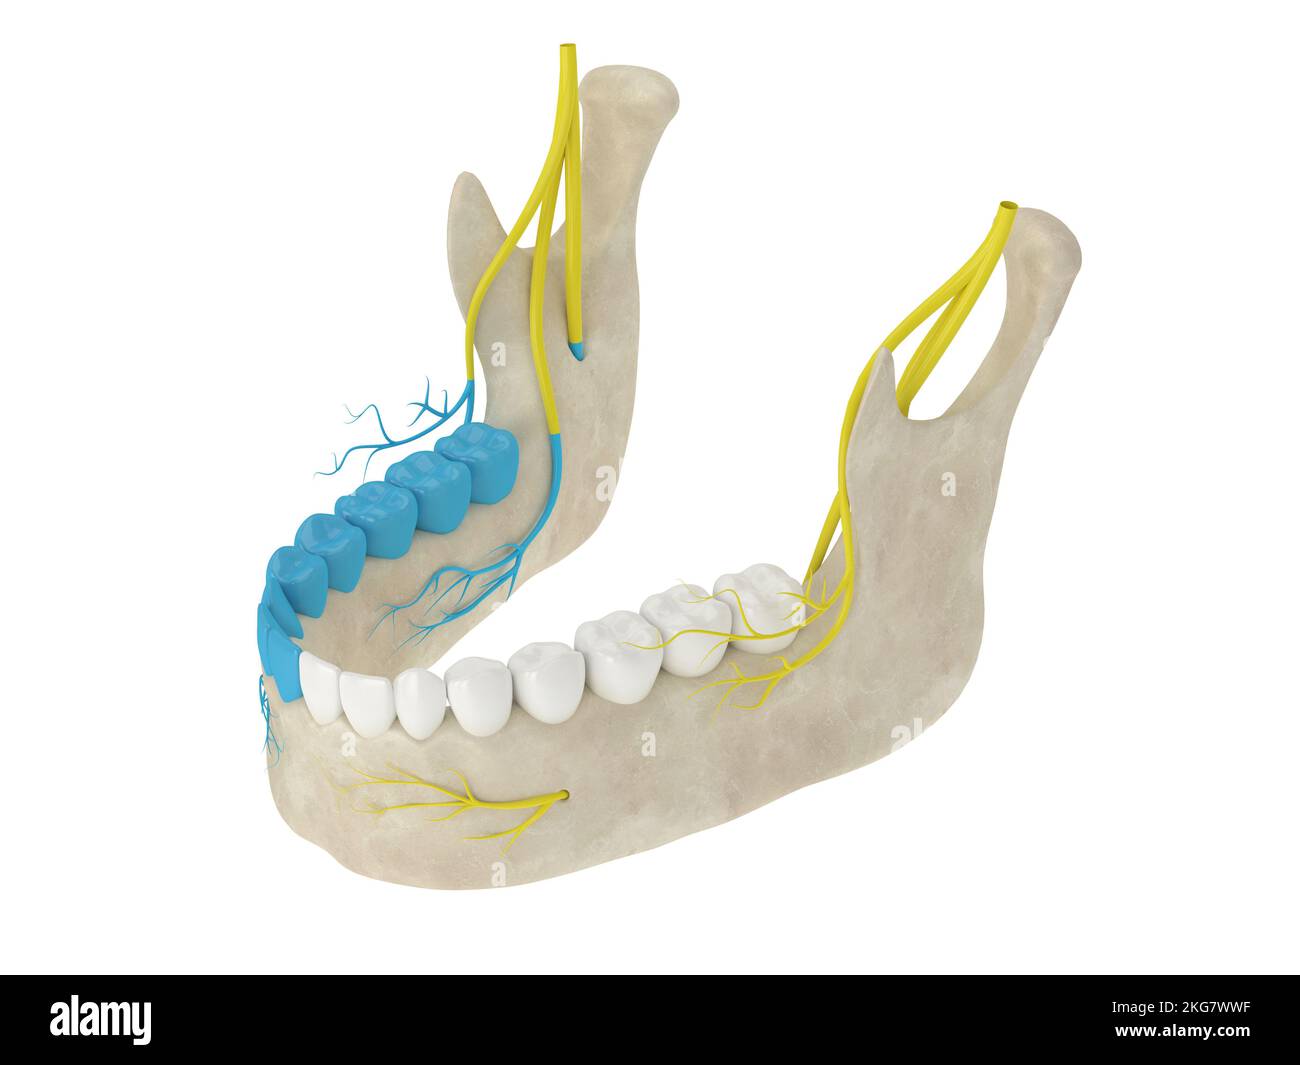 3d rappresentazione dell'arco mandibolare che mostra una zona del nervo alveolare inferiore bloccata. Tipi di anestesia dentale concetto. Foto Stock